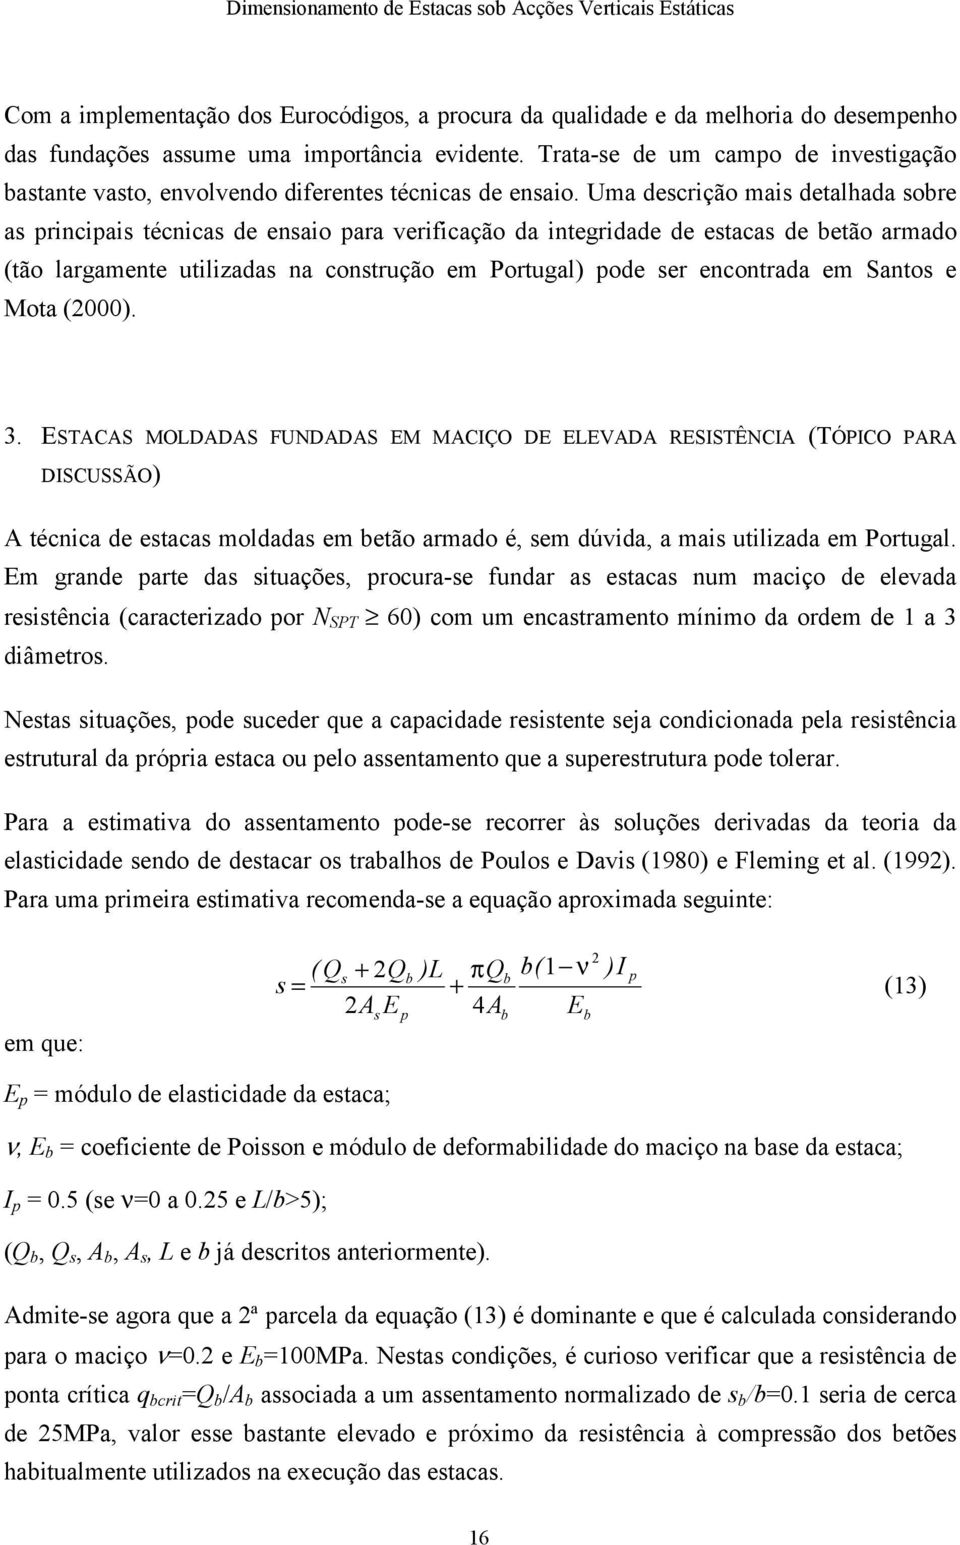 Uma descrição mais detalhada sobre as principais técnicas de ensaio para verificação da integridade de estacas de betão armado (tão largamente utilizadas na construção em Portugal) pode ser